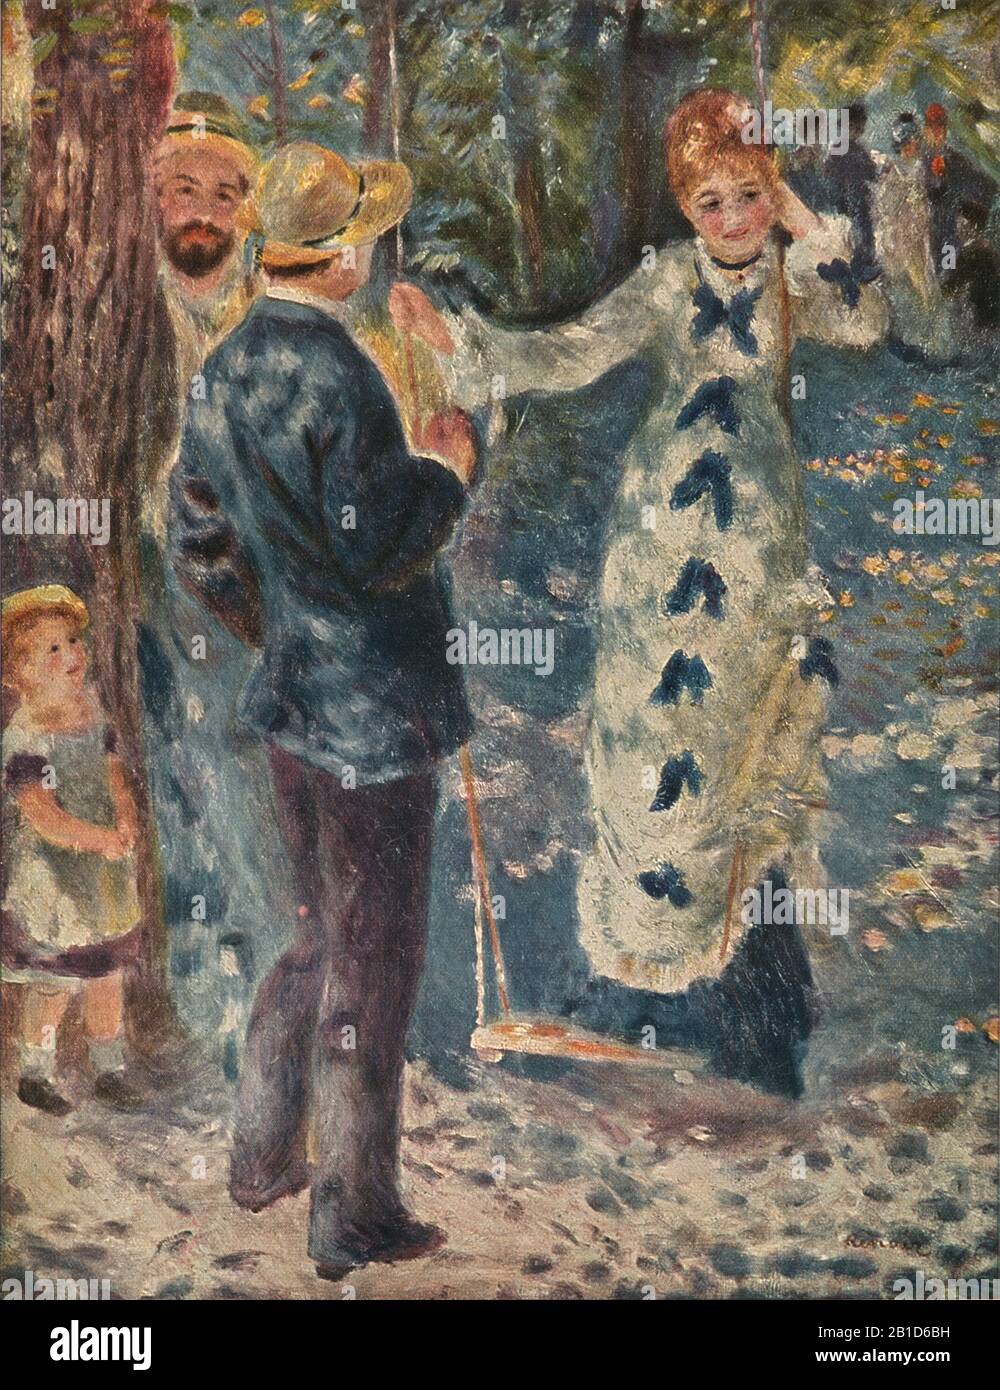 The Swing (1876) - Pittura del 19th Secolo di Pierre-Auguste Renoir - immagine Ad Altissima risoluzione e di qualità Foto Stock